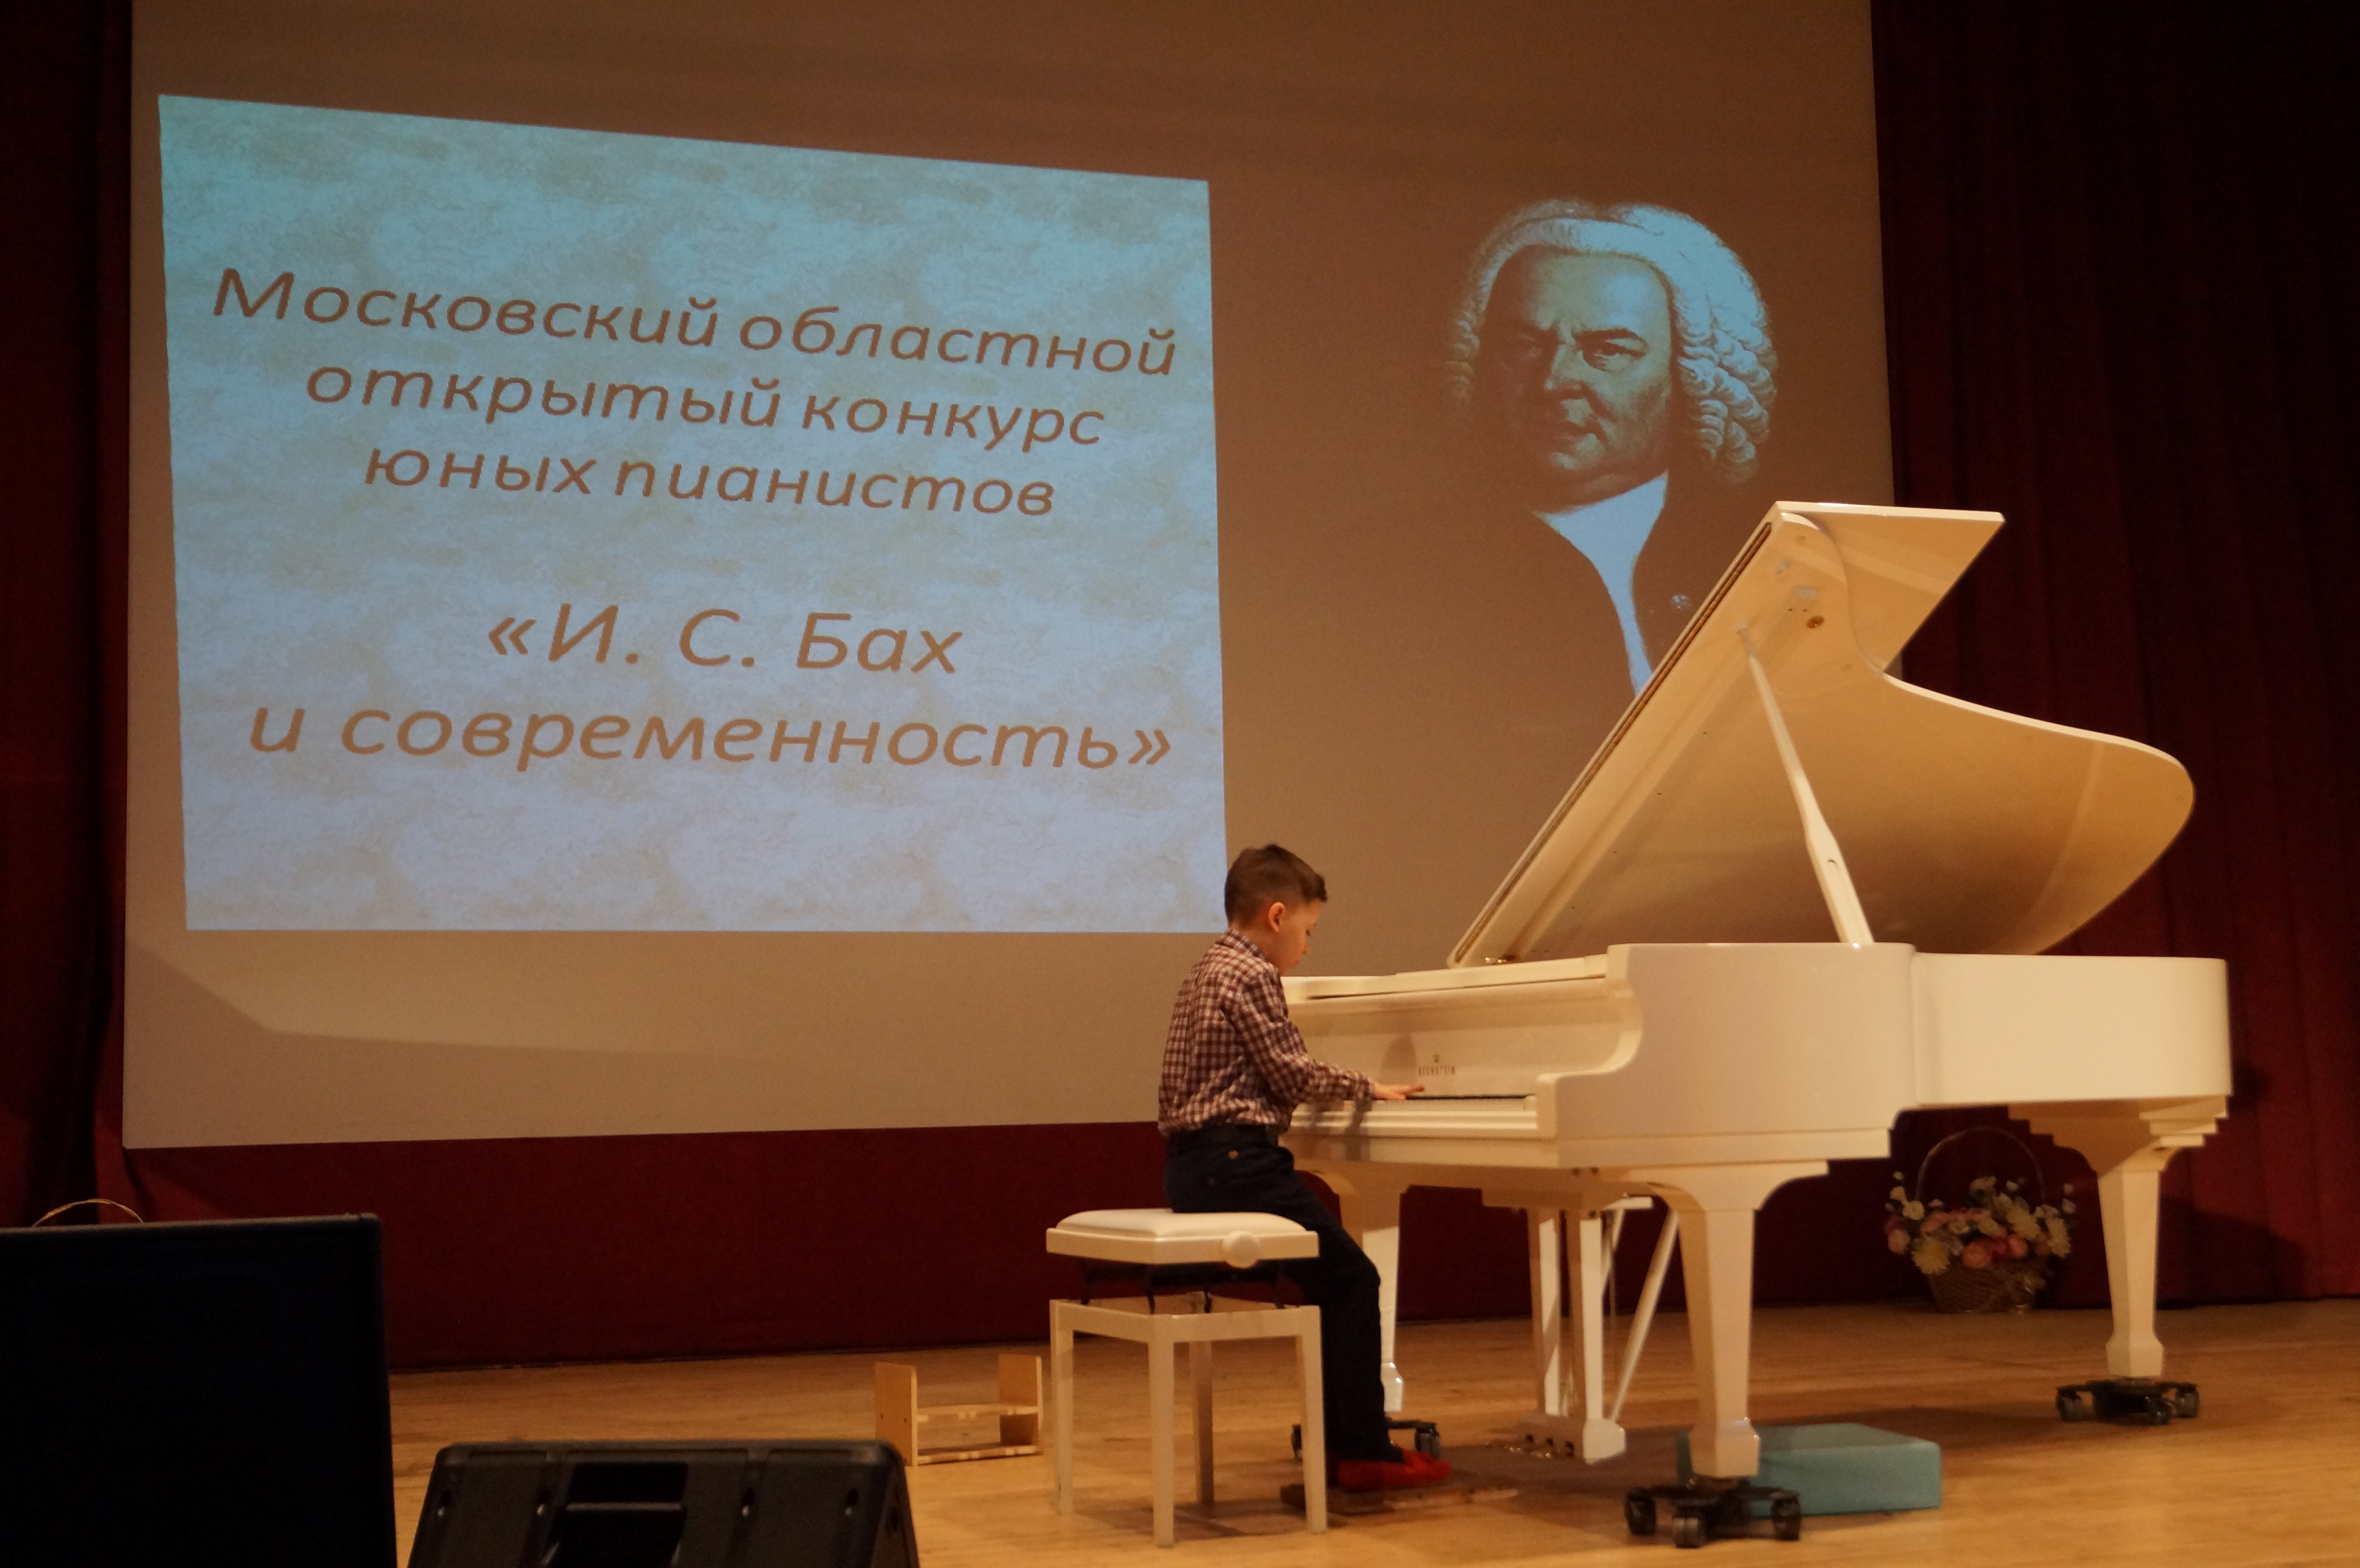 Московский областной открытый конкурс юных пианистов «Бах и современность»